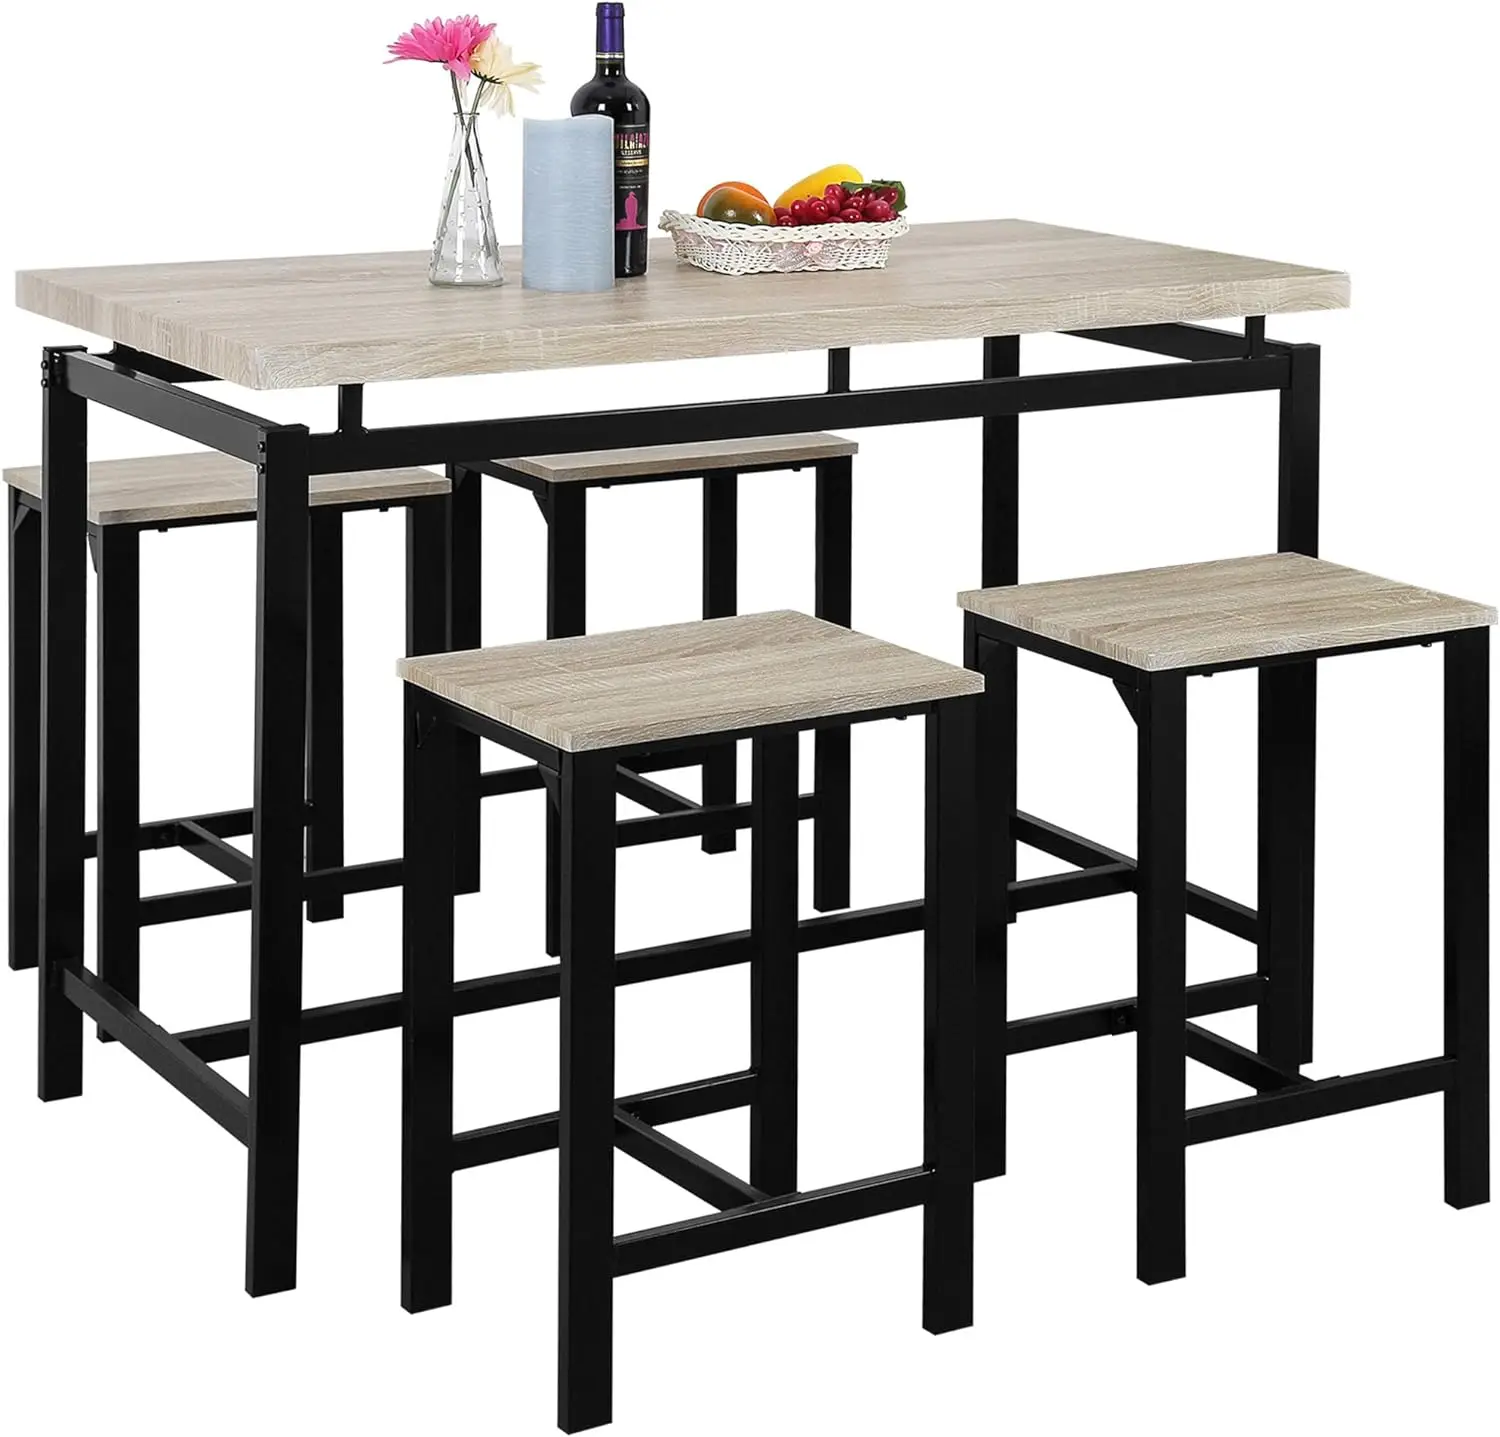 

Набор обеденного стола из 5 предметов, набор современных высотных столов для кухни с 4 стульями, набор деревянных барных столов для паба